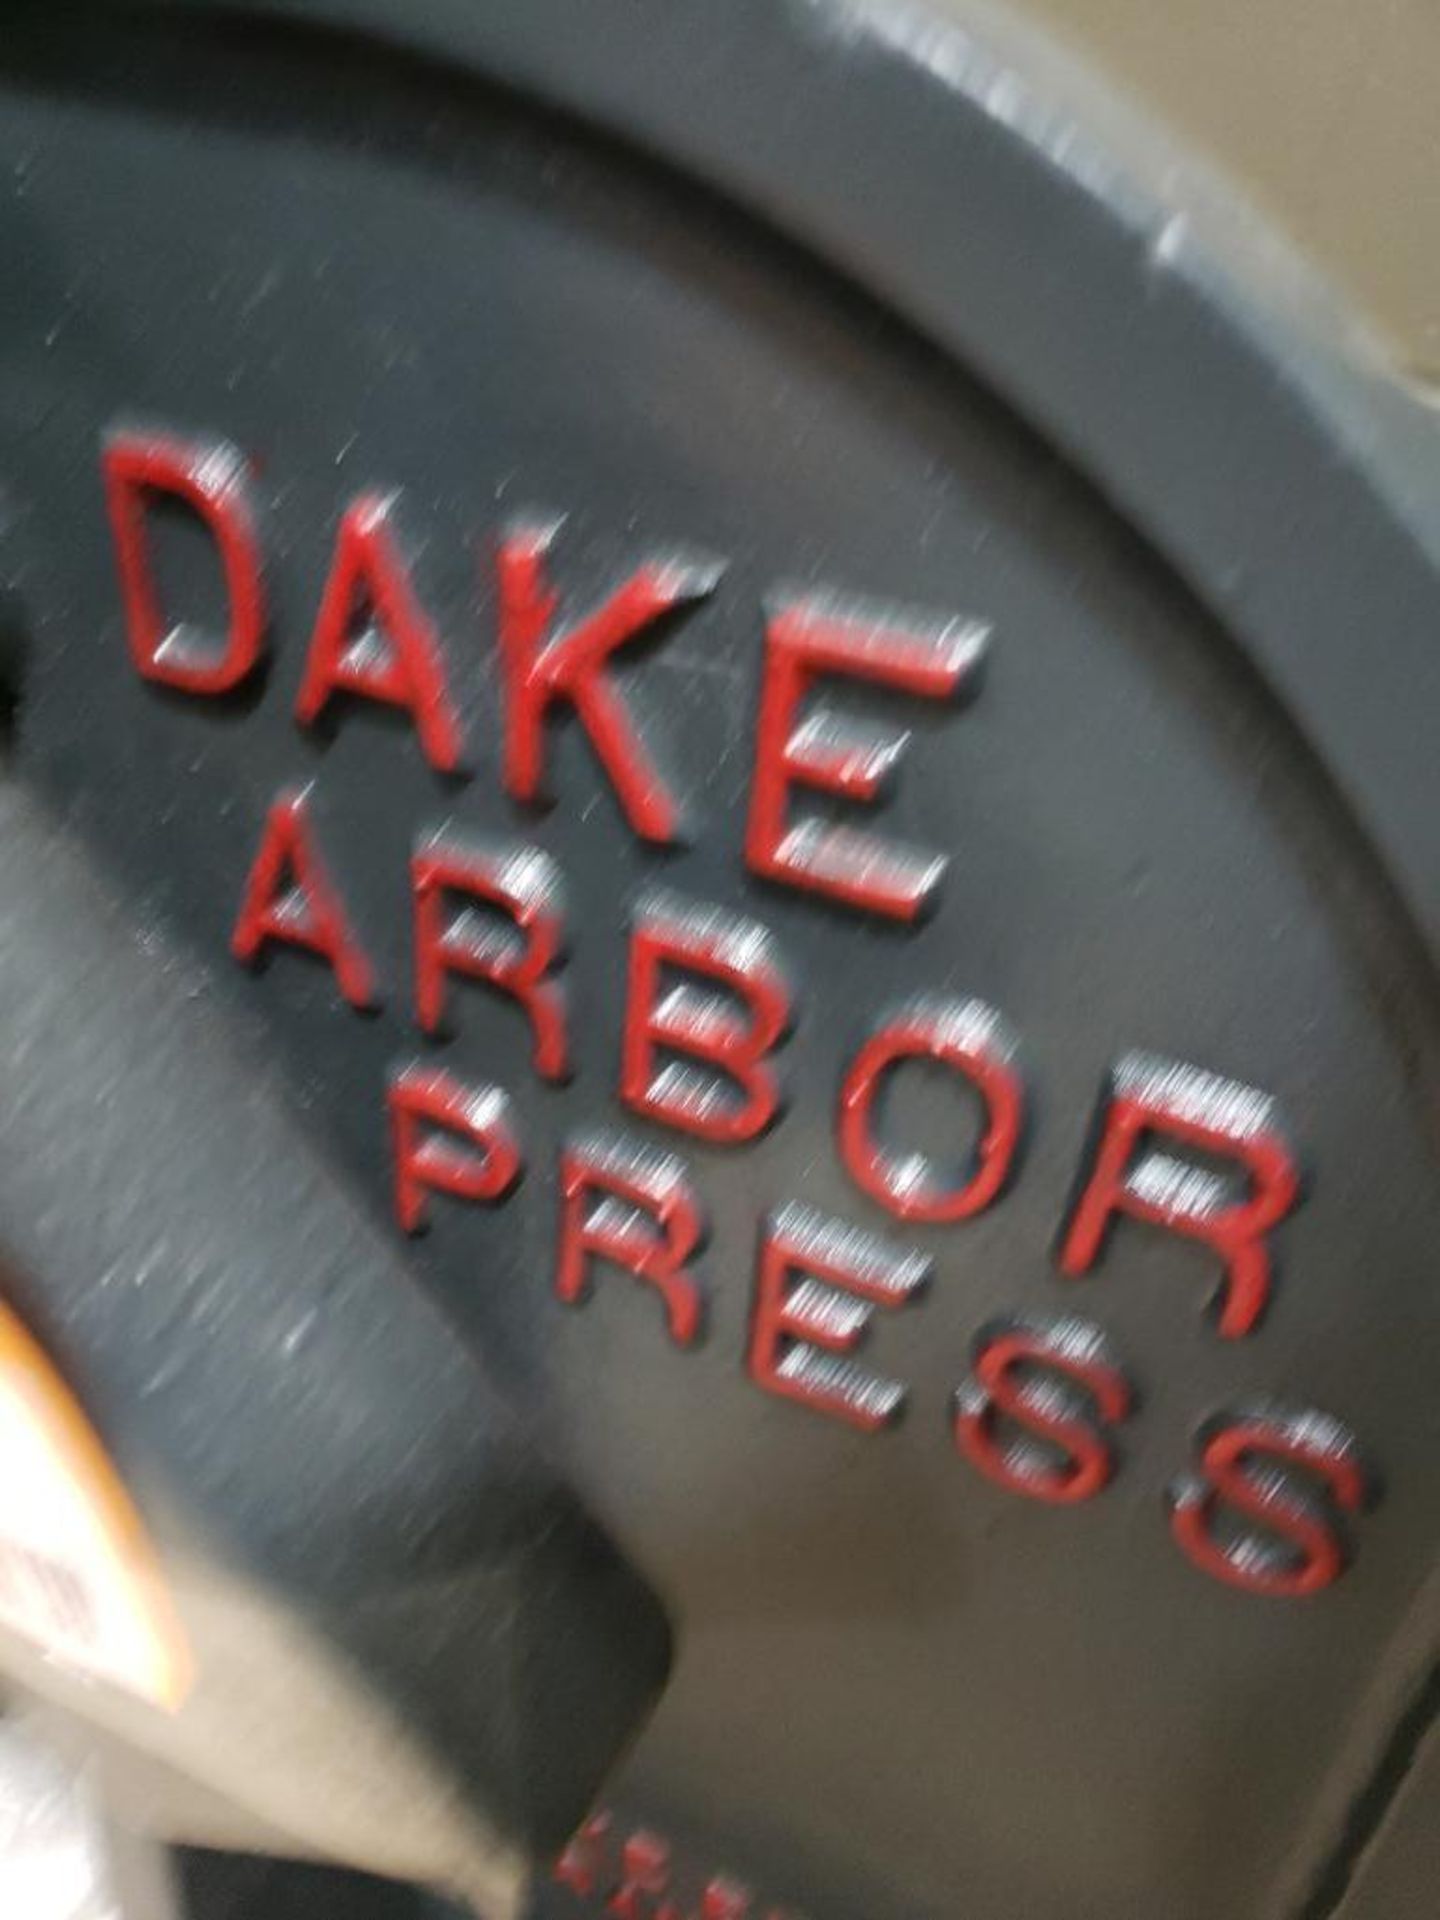 Dake Model 2 arbor press. - Image 2 of 7